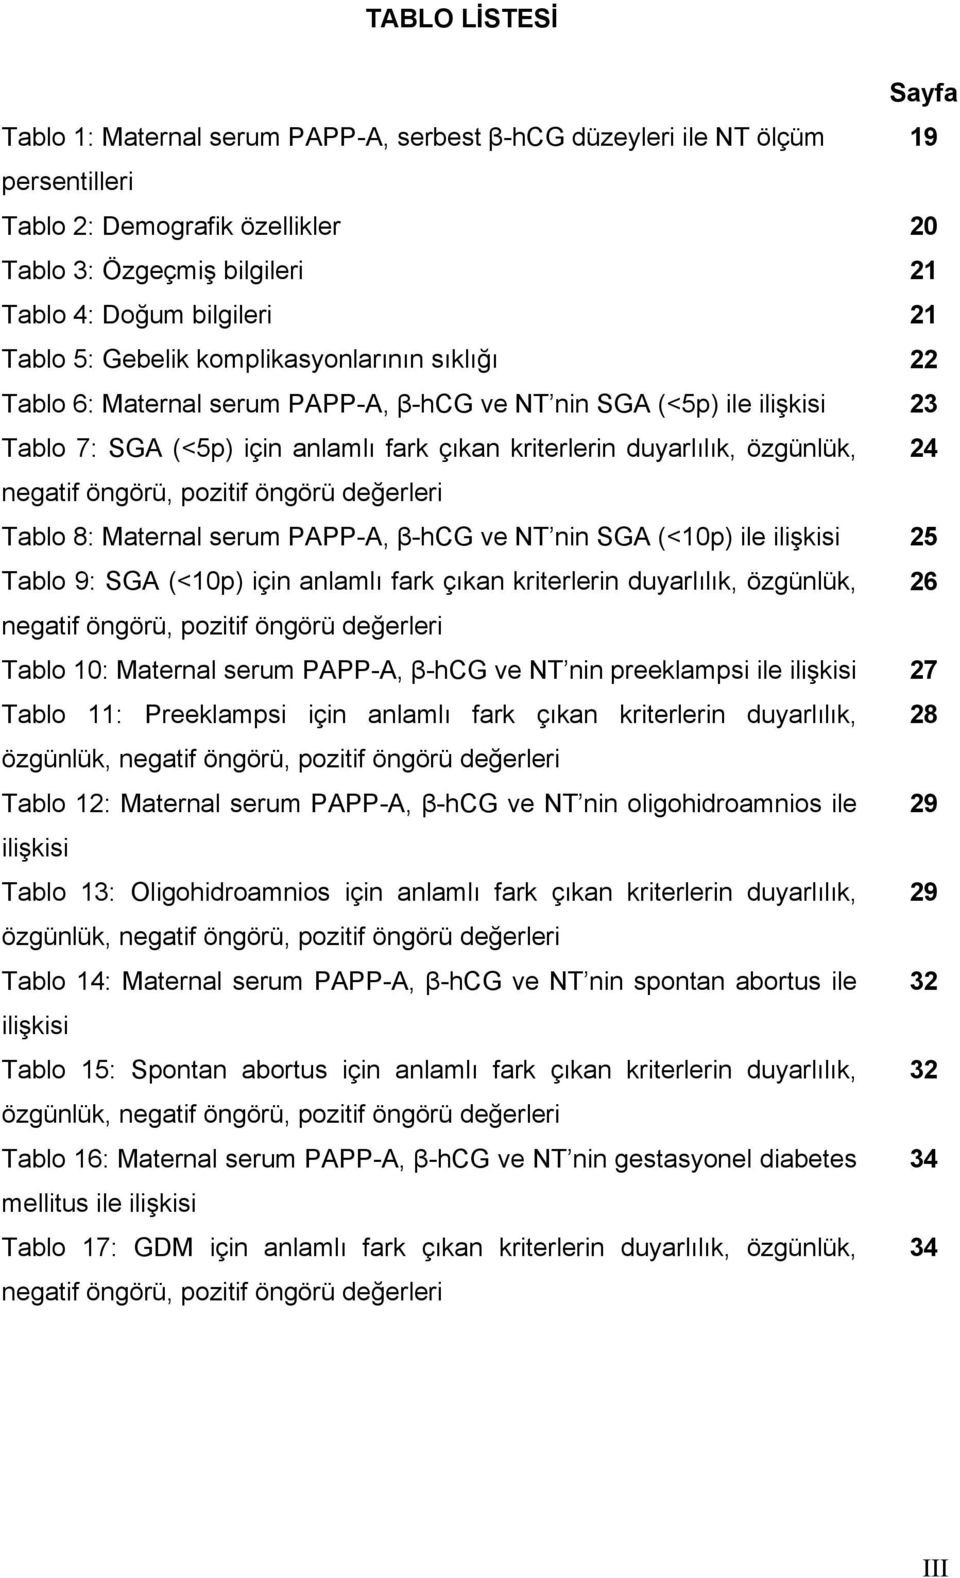 24 negatif öngörü, pozitif öngörü değerleri Tablo 8: Maternal serum PAPP-A, β-hcg ve NT nin SGA (<10p) ile ilişkisi 25 Tablo 9: SGA (<10p) için anlamlı fark çıkan kriterlerin duyarlılık, özgünlük, 26